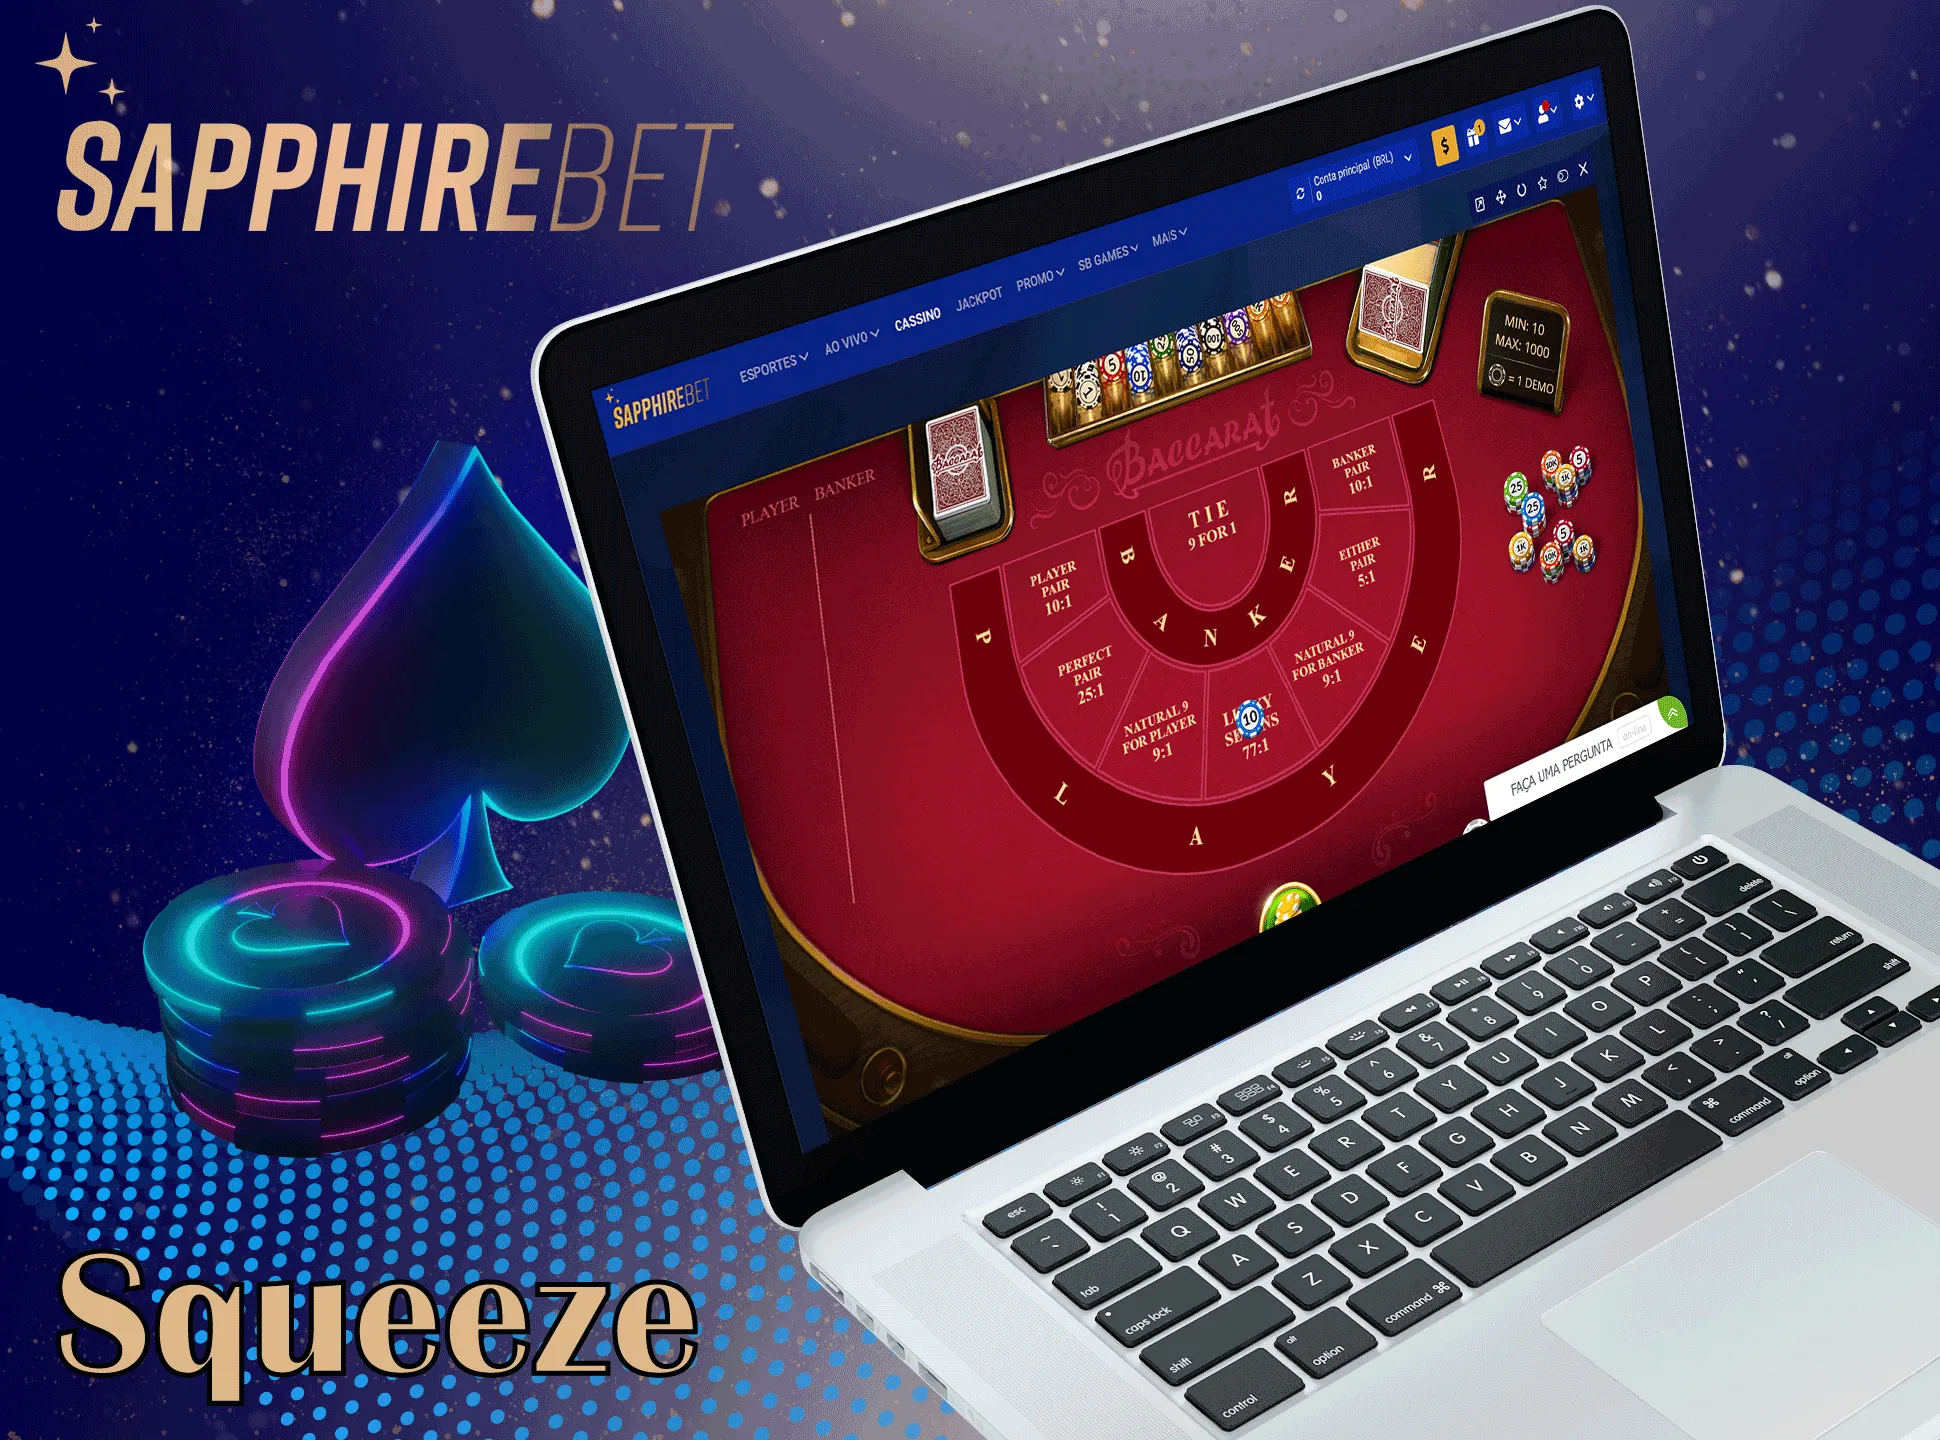 O casino Sapphirebet tem uma forte ênfase na revelação das cartas, o dealer revela lentamente as cartas, o que provoca uma ligeira adrenalina.